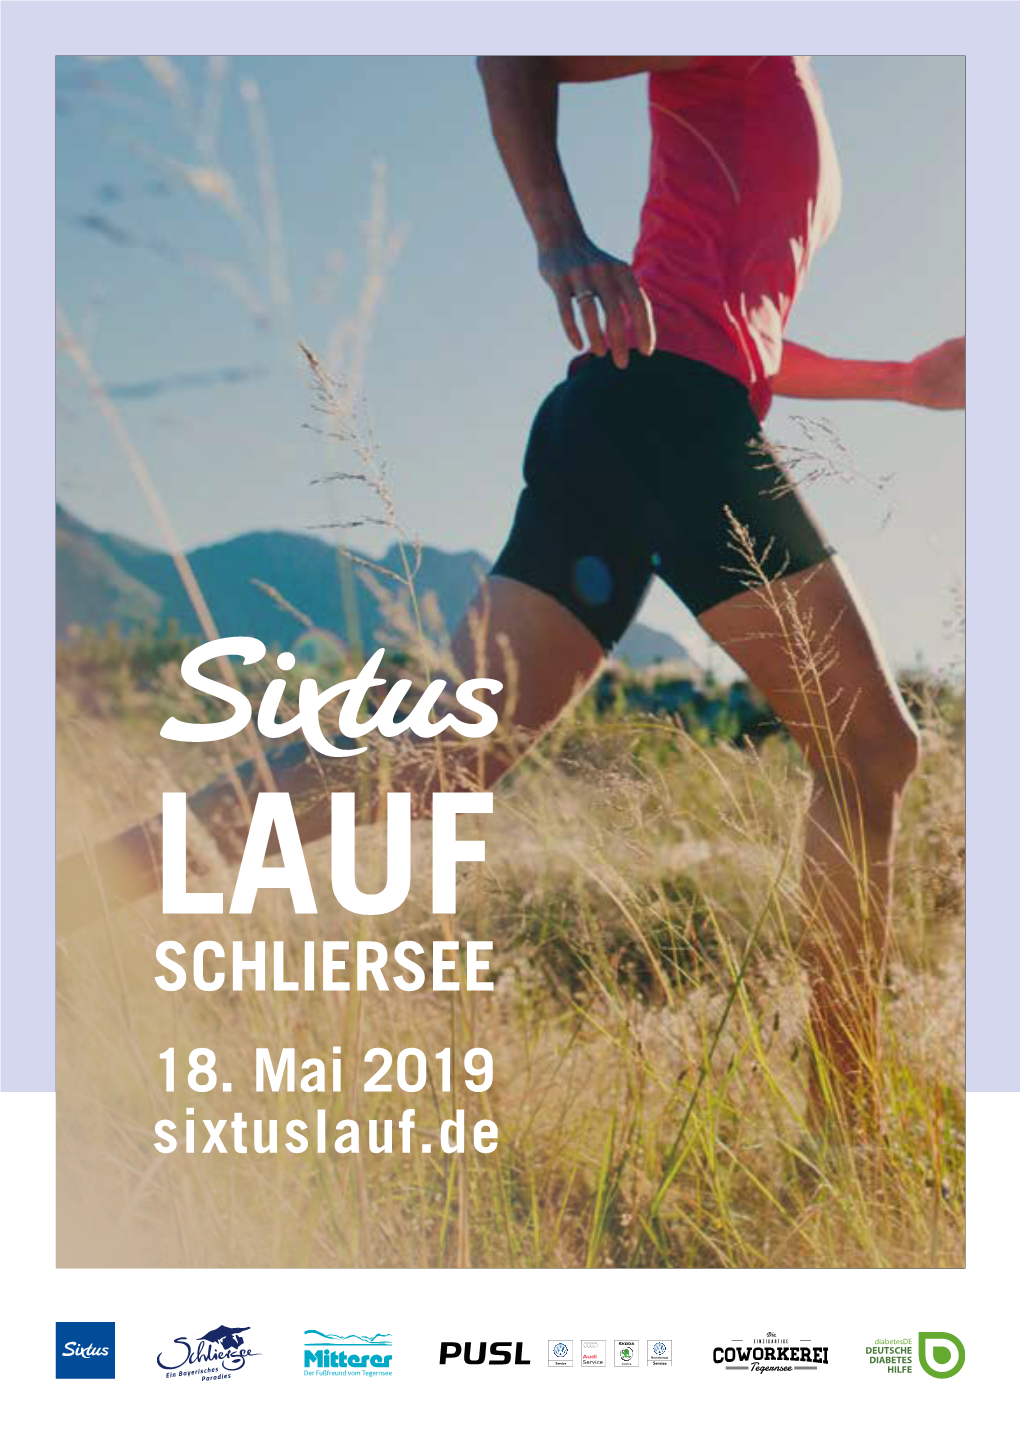 Sixtus Lauf Schliersee 2019